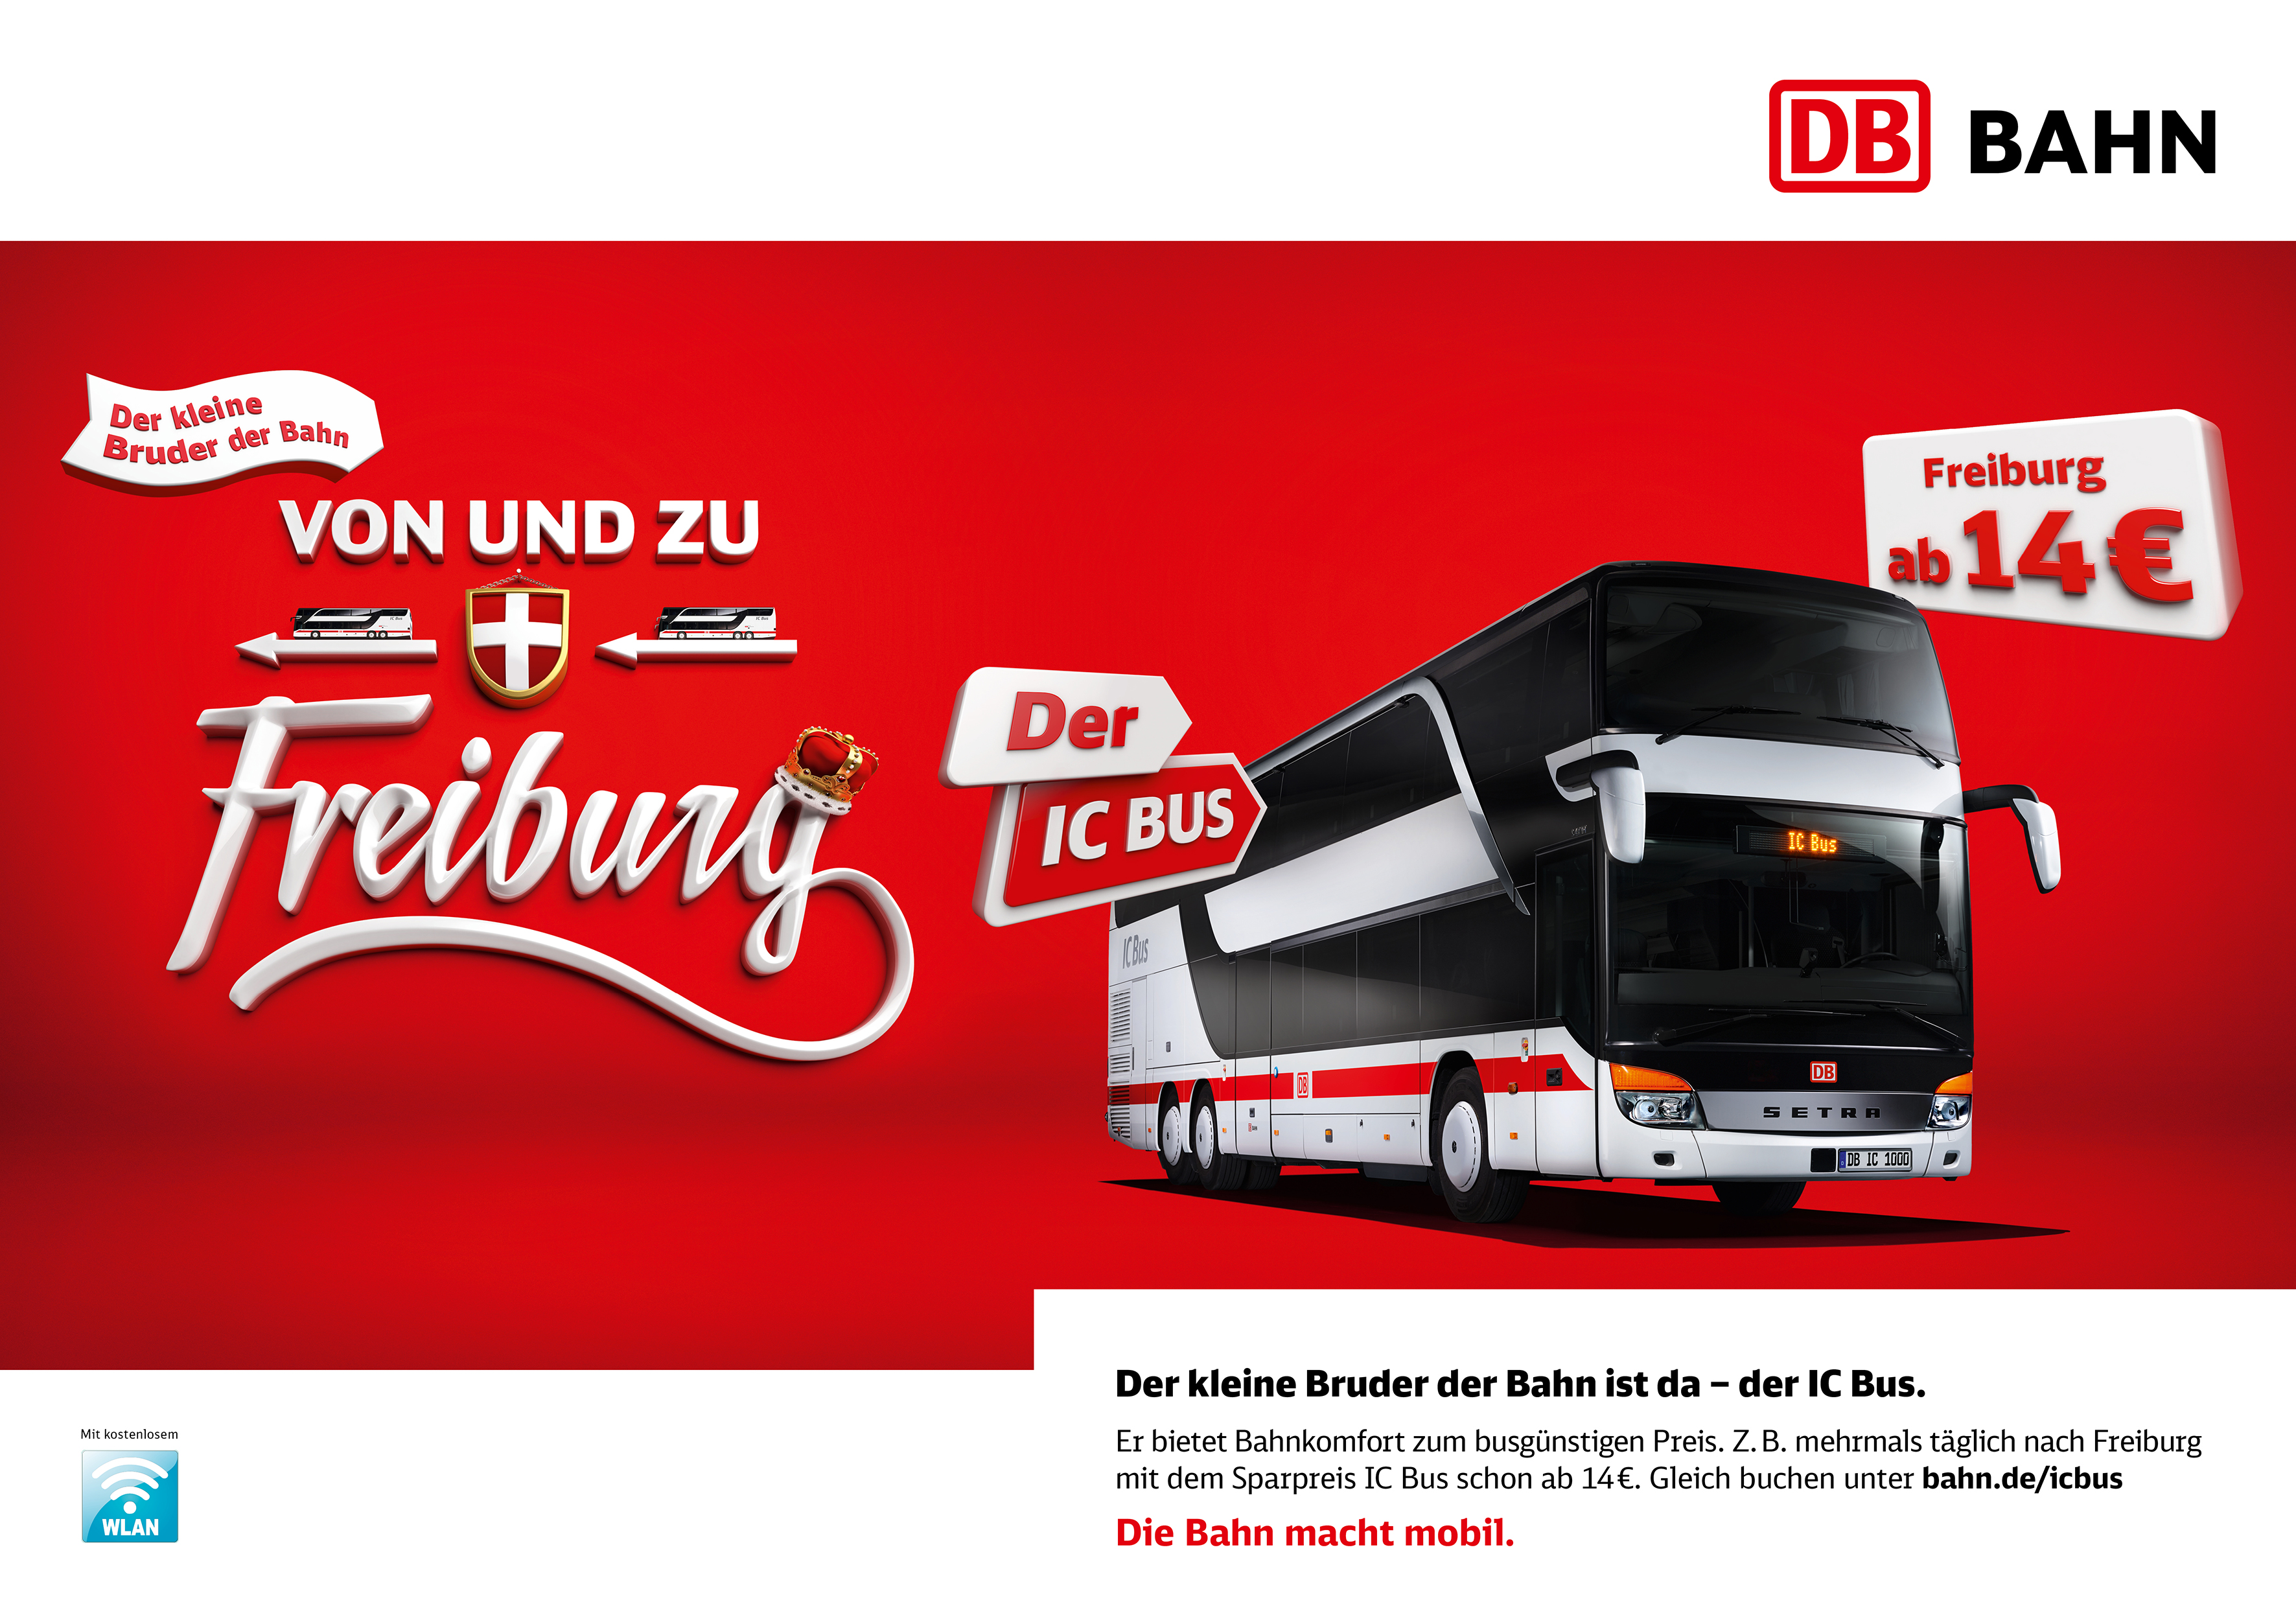 Motiv aus der Print-Kampagne für den IC Bus mit der Headline "Von und zu Freiburg" und der Kampagnenzeile "Der kleine Bruder der Bahn ist da".